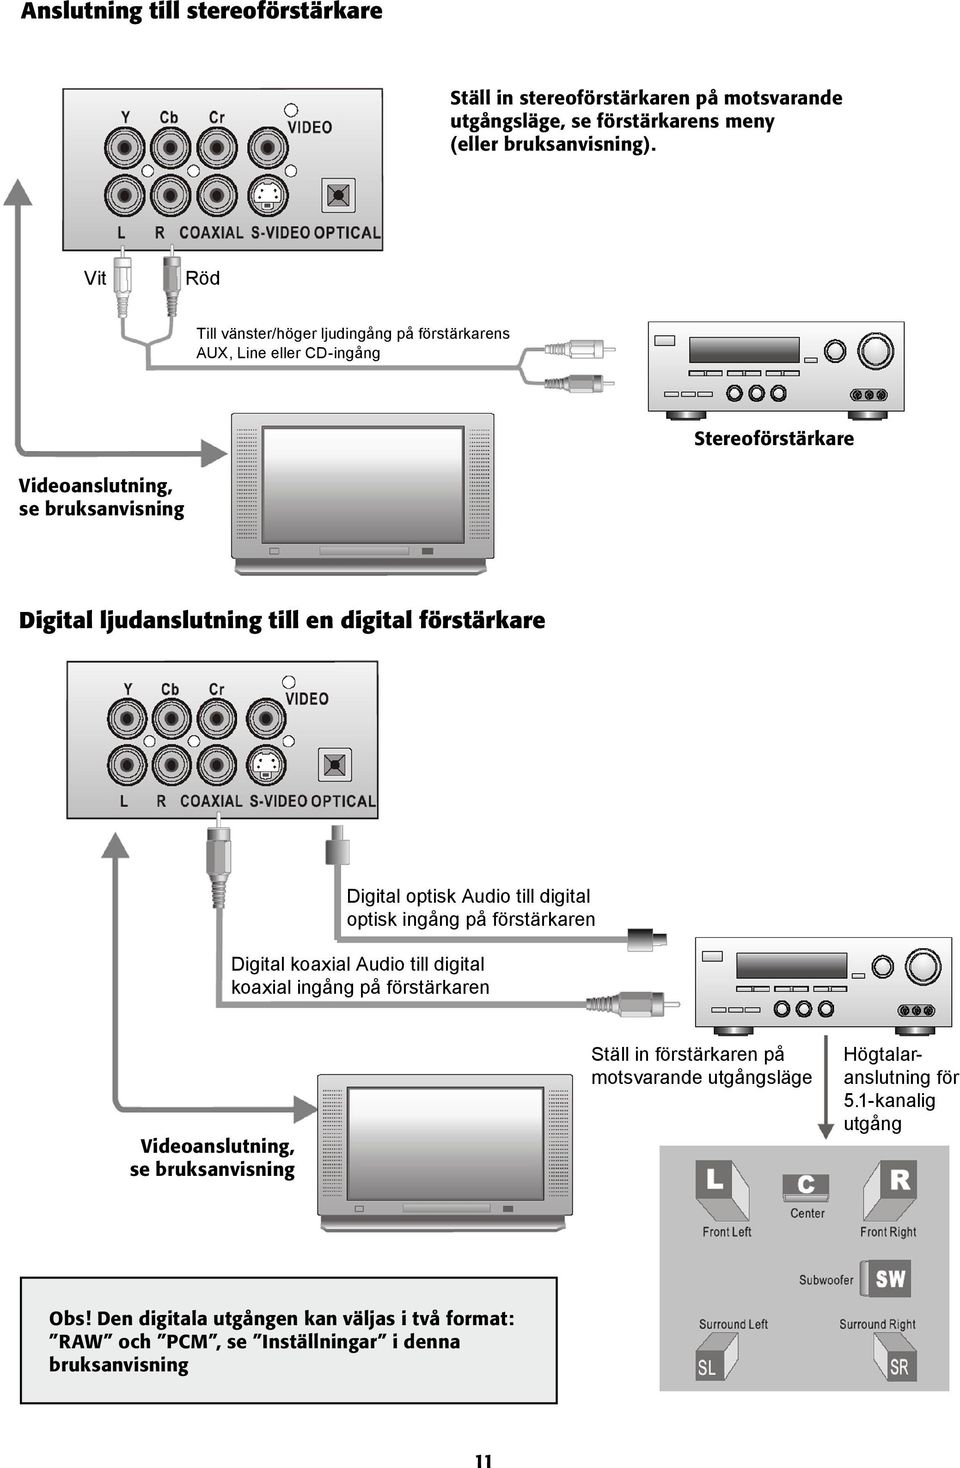 digital förstärkare Digital optisk Audio till digital optisk ingång på förstärkaren Digital koaxial Audio till digital koaxial ingång på förstärkaren Videoanslutning, se